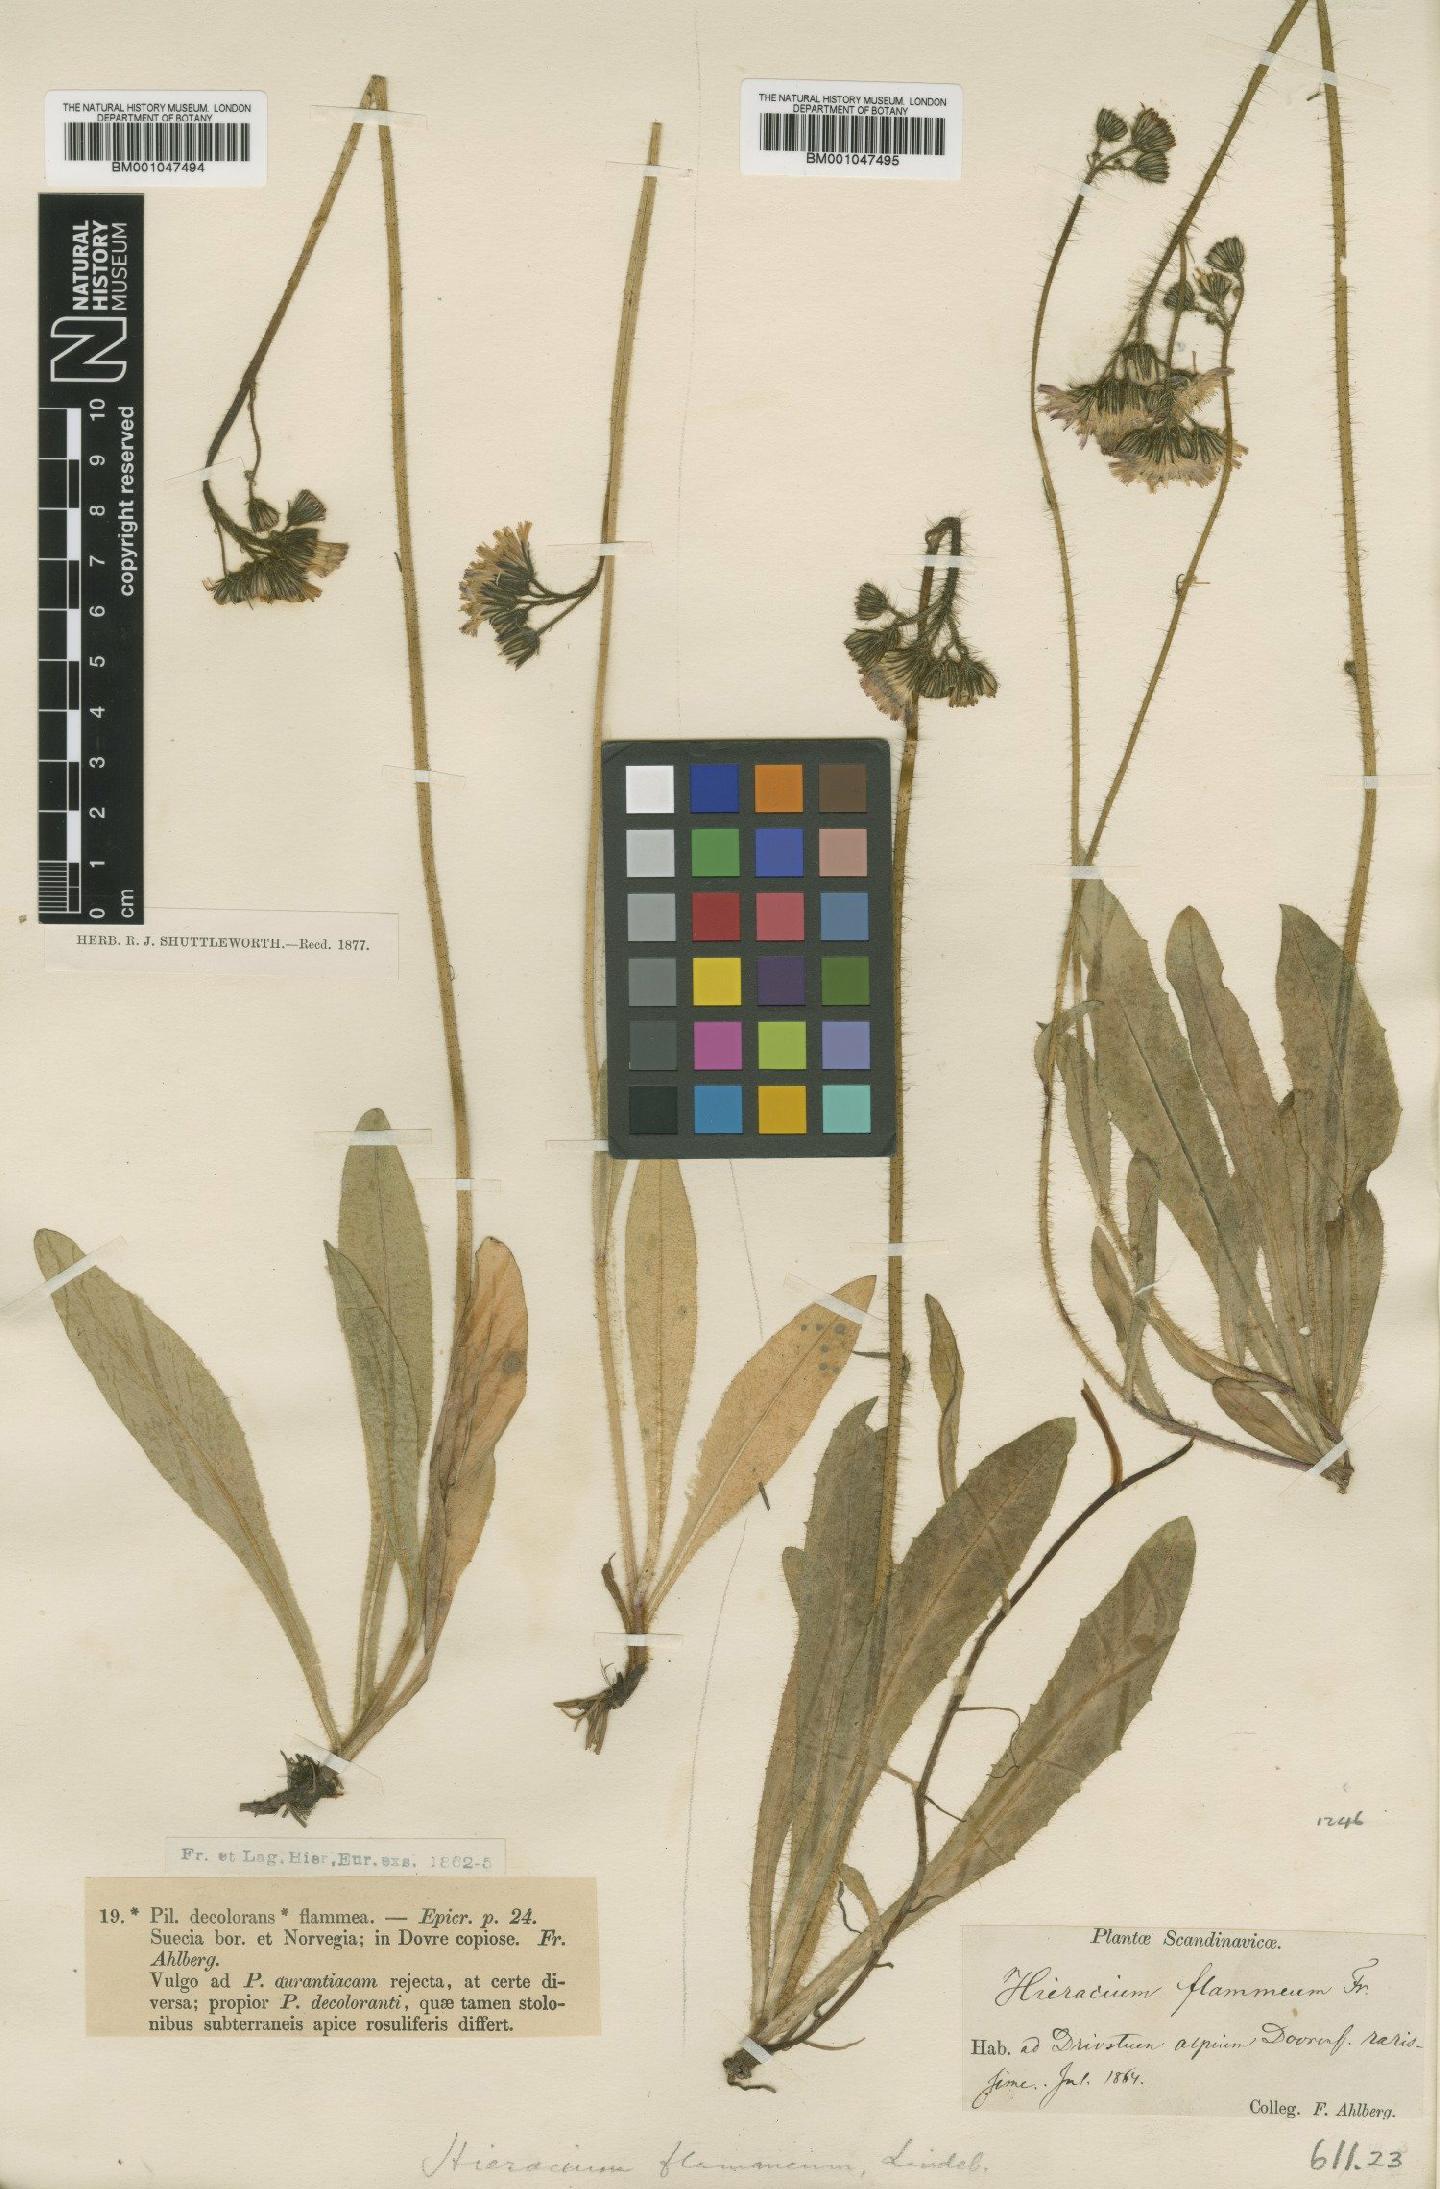 To NHMUK collection (Hieracium aurantiacum subsp. decolorans (Fr.) Nägeli & Peter; Type; NHMUK:ecatalogue:2765286)